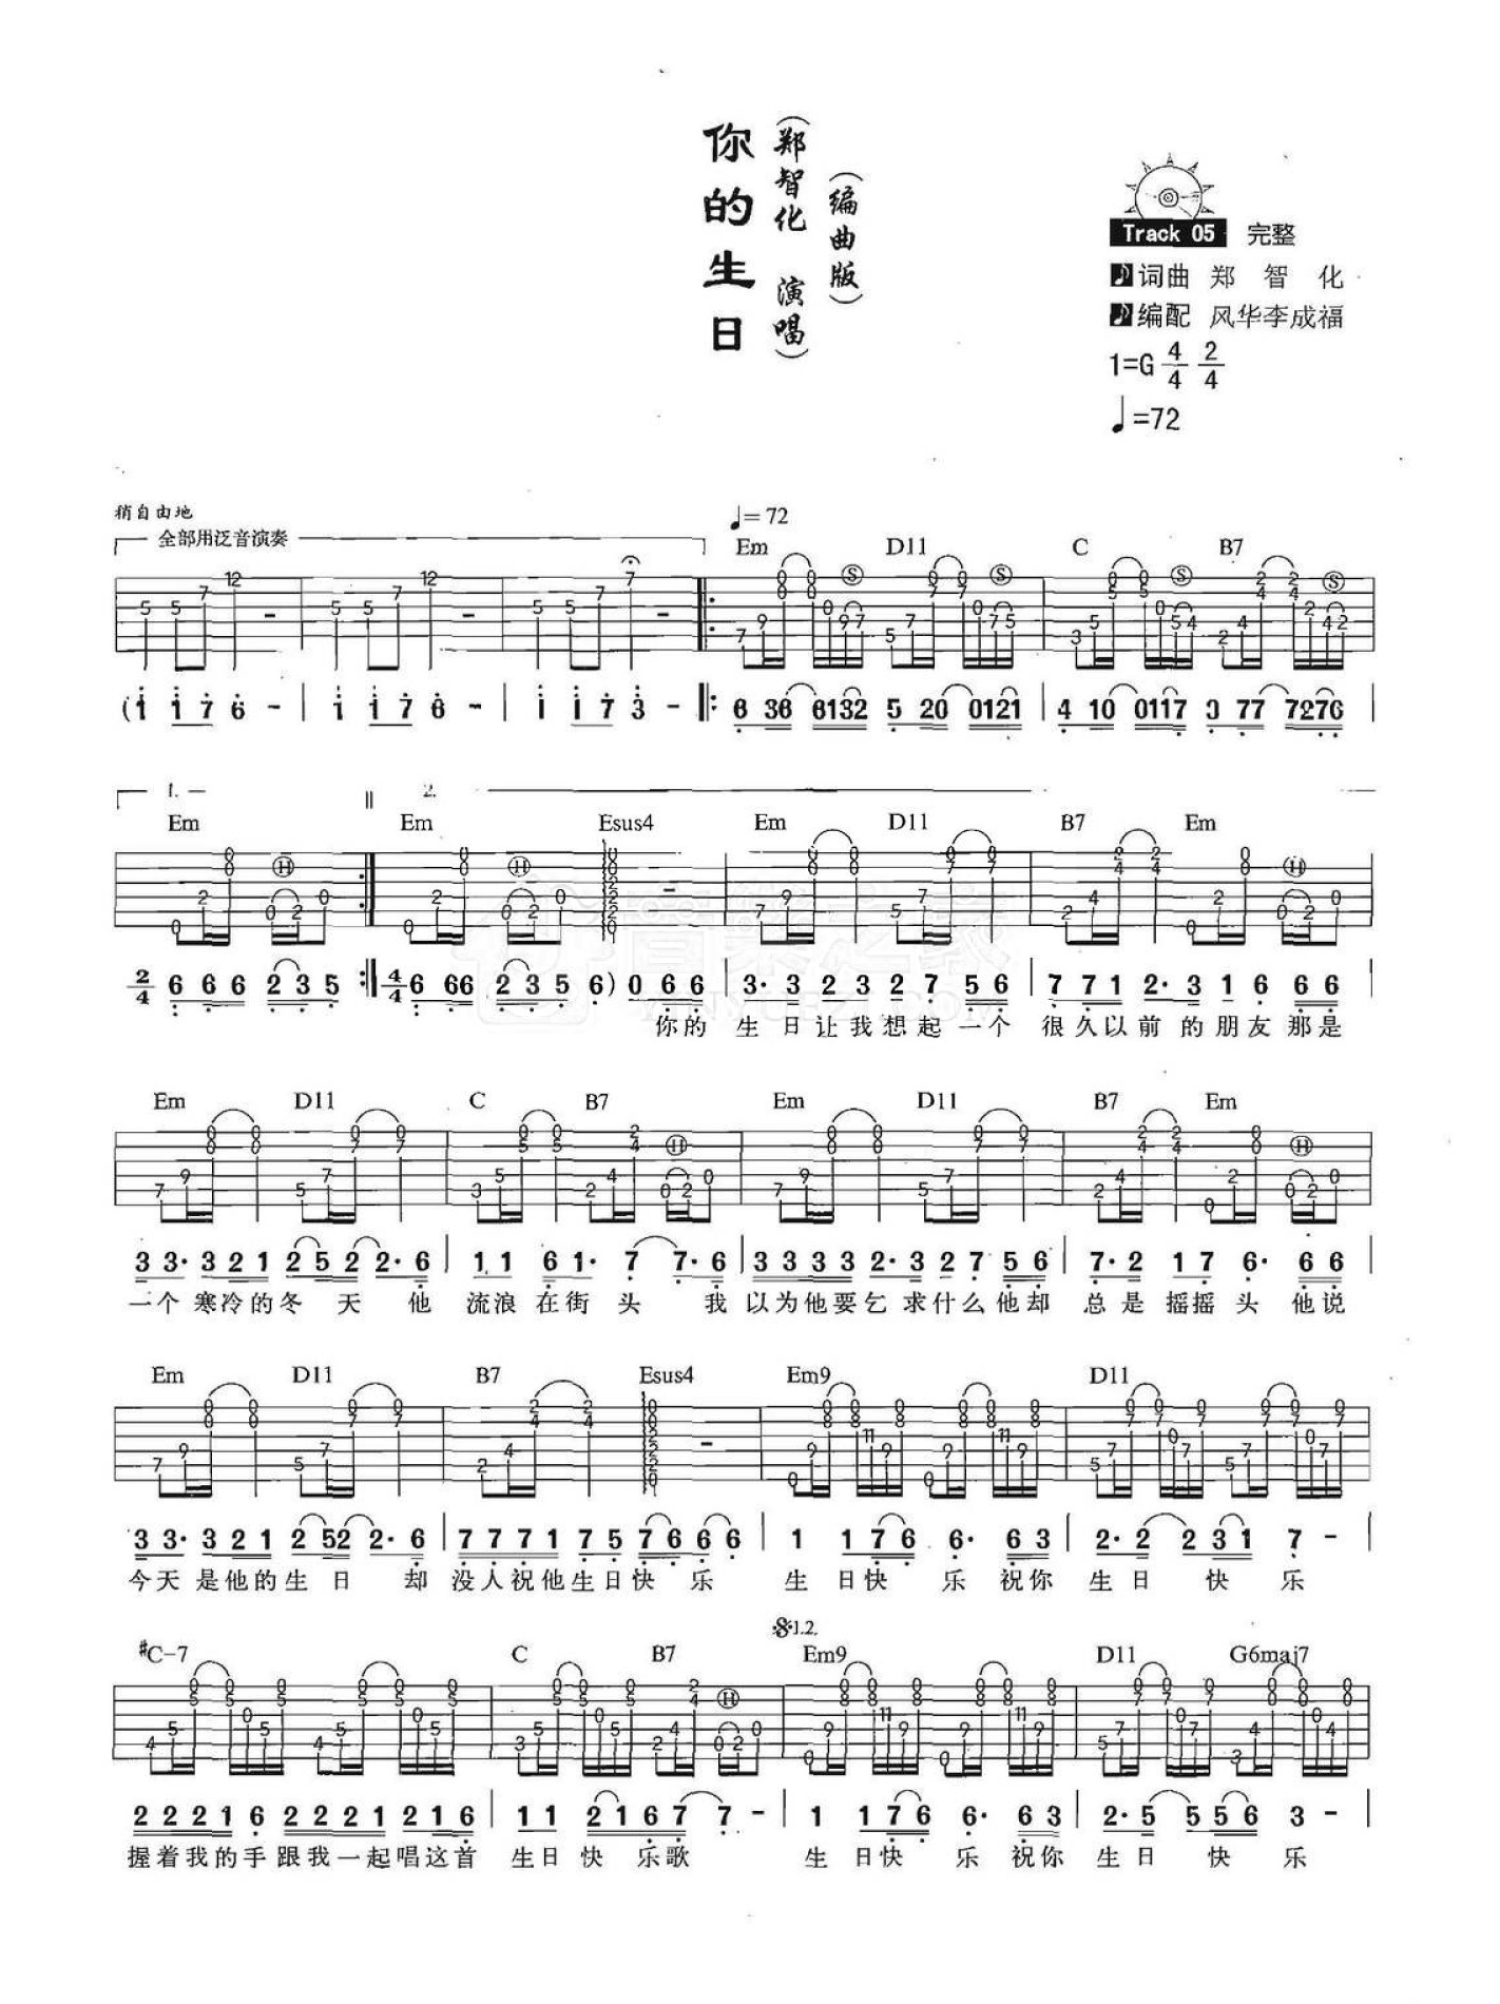 赵照 - 当你老了(初学者进阶) [弹唱 中国好歌曲 教学] 吉他谱